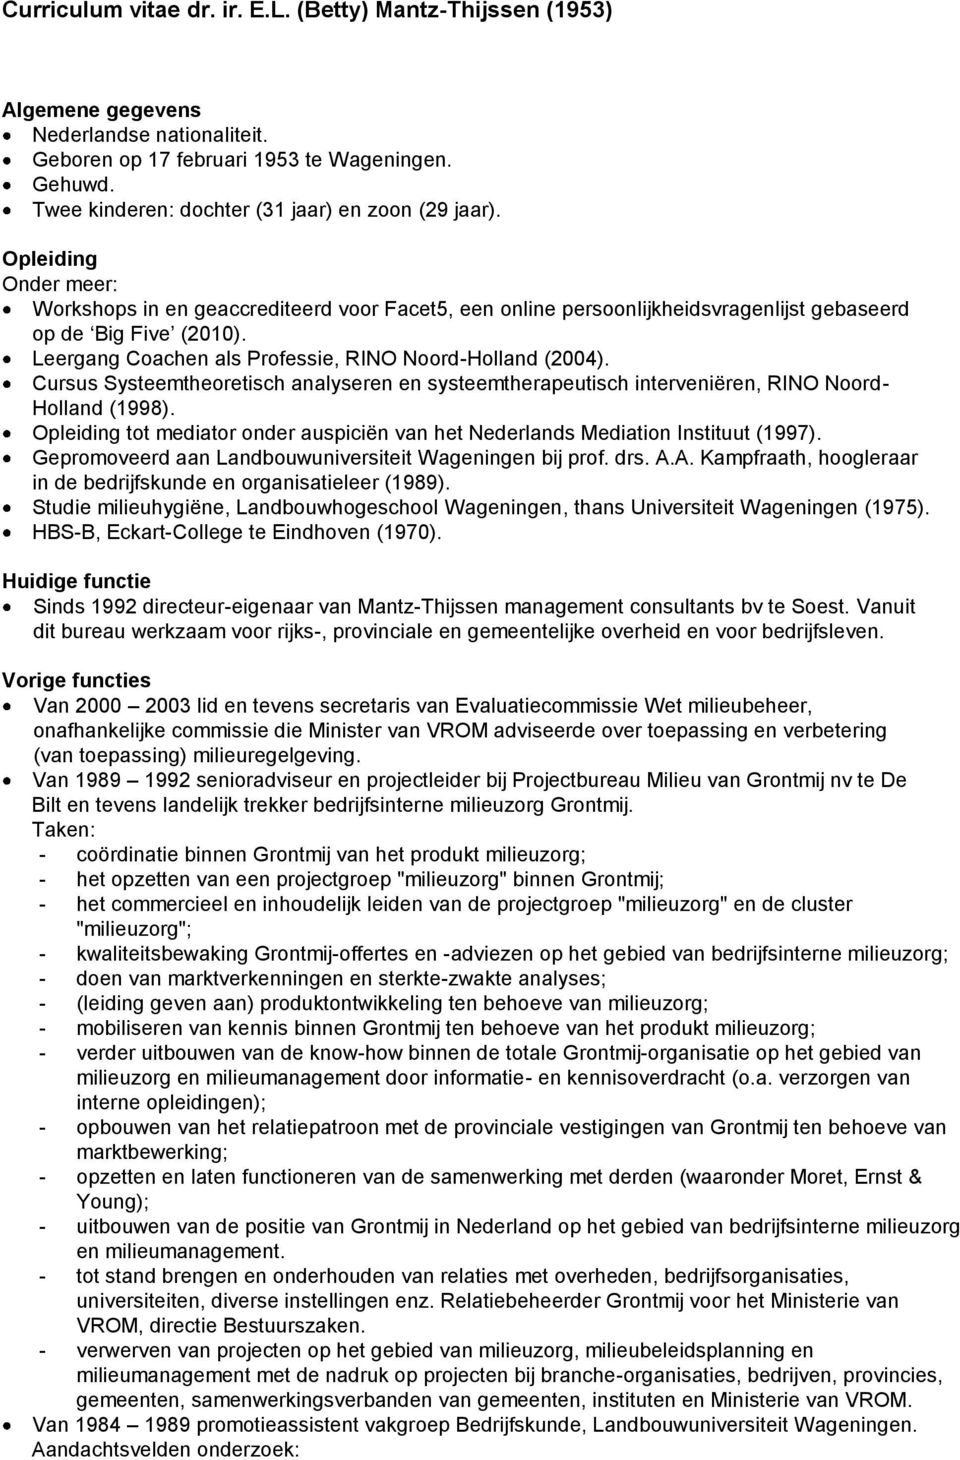 Leergang Coachen als Professie, RINO Noord-Holland (2004). Cursus Systeemtheoretisch analyseren en systeemtherapeutisch interveniëren, RINO Noord- Holland (1998).